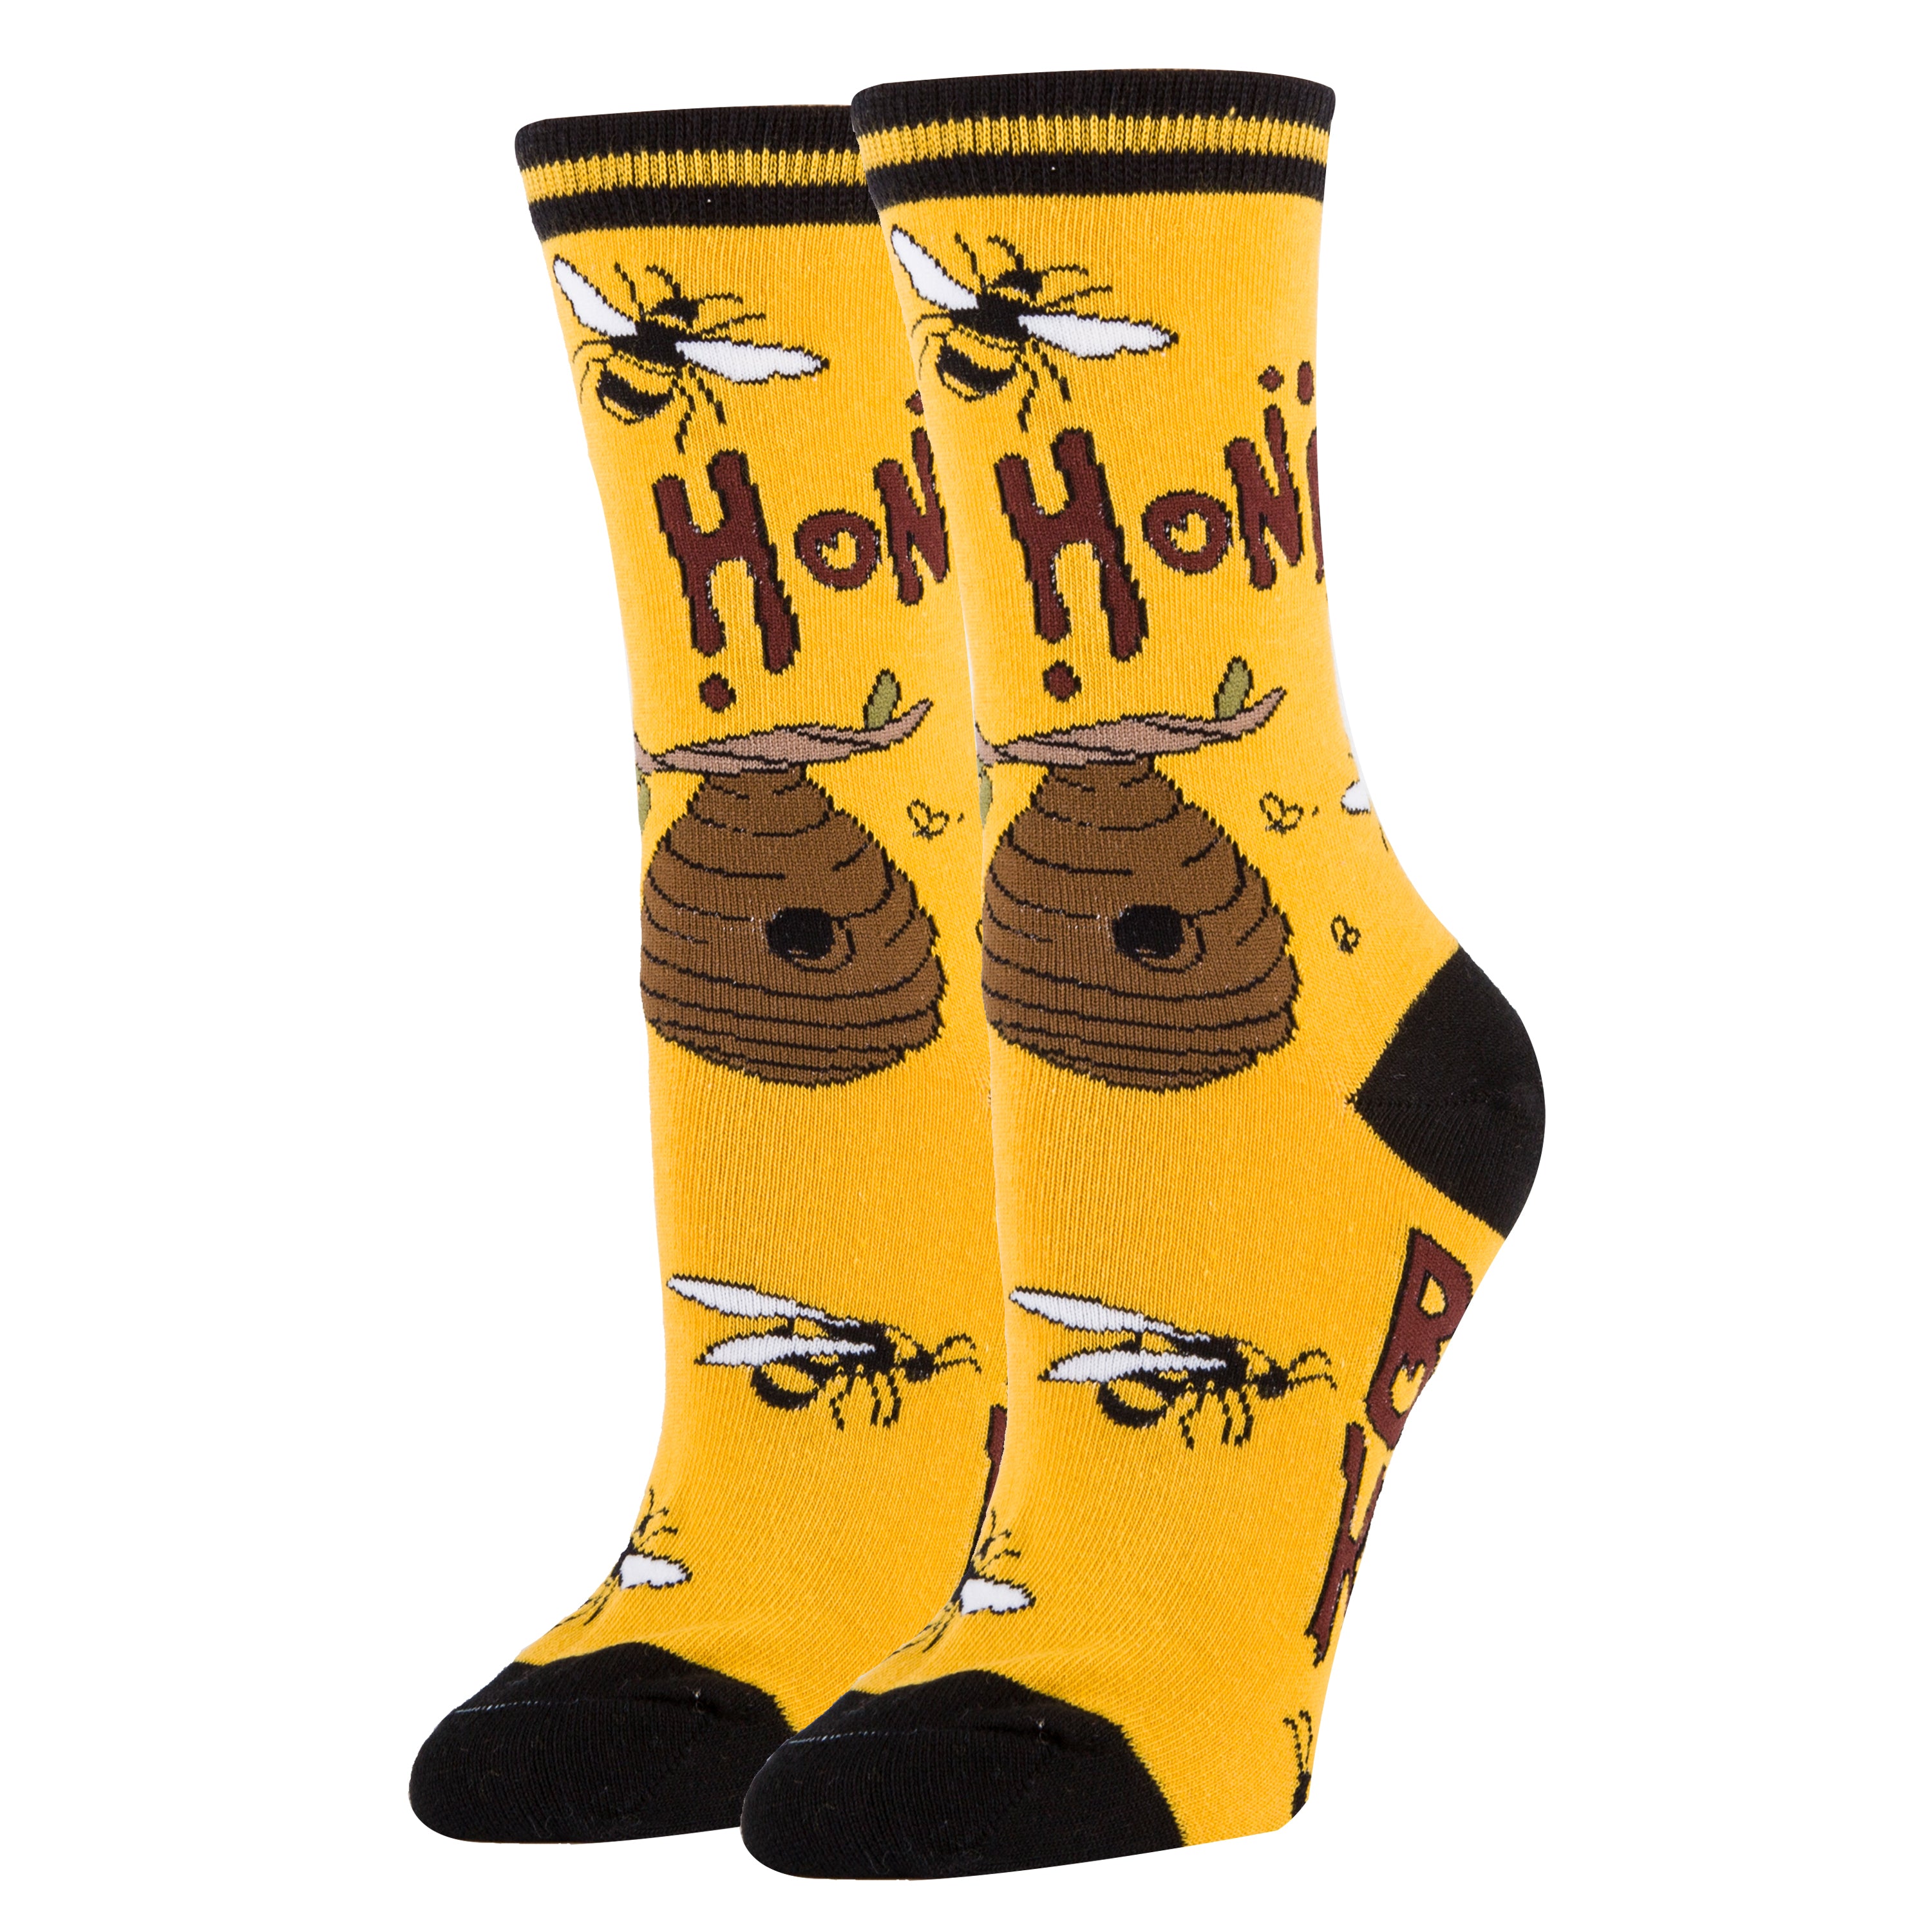 Bee Kind Socks | Novelty Socks For Women